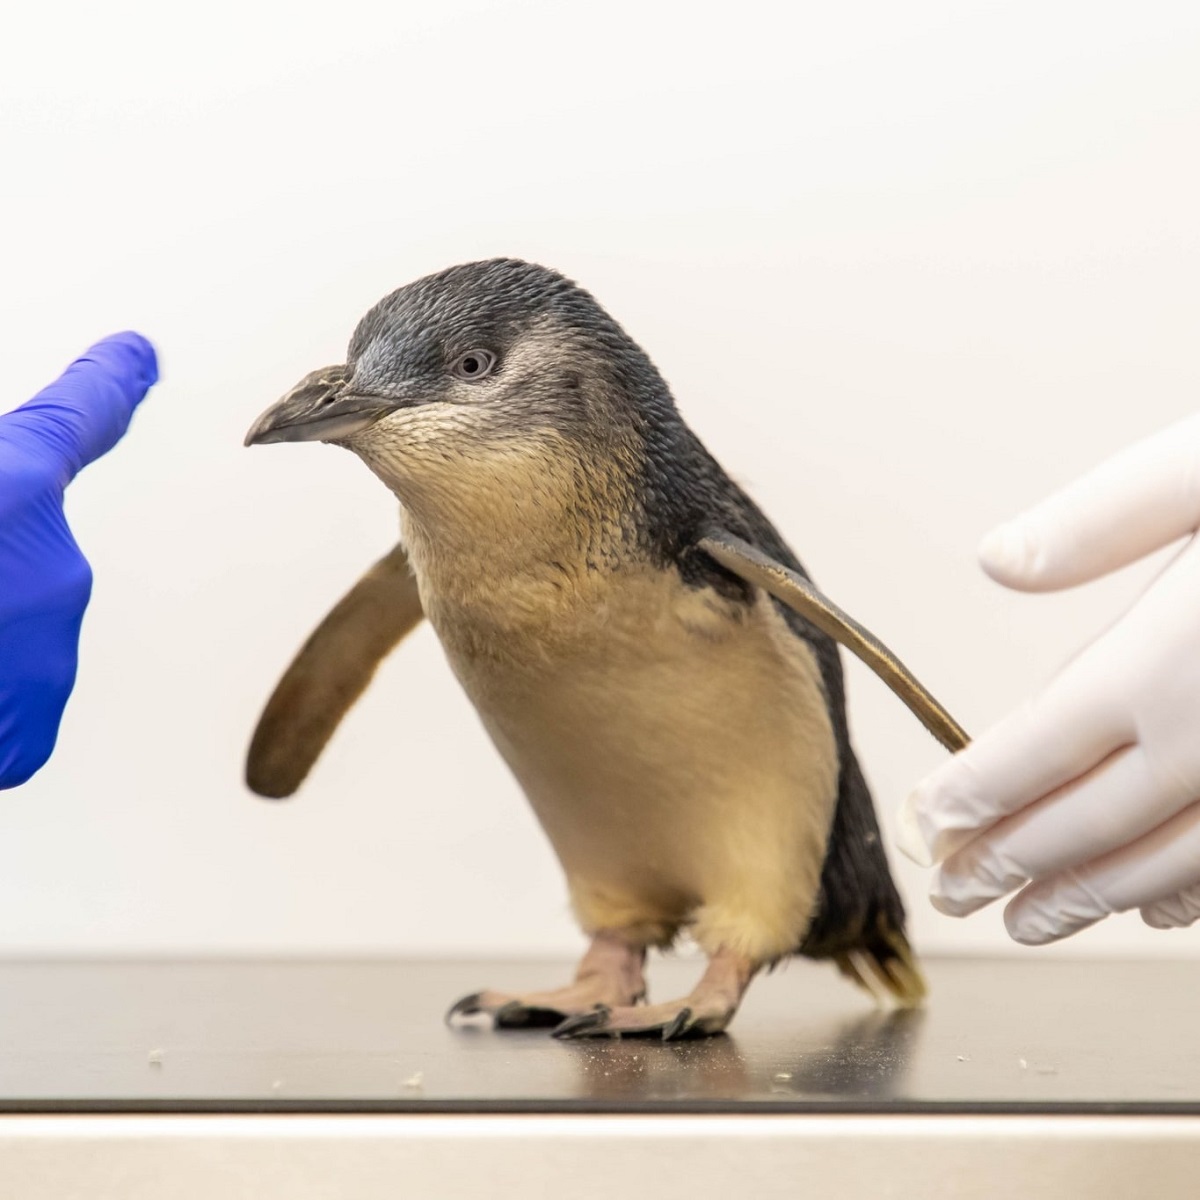 Risonanza magnetica a un pinguino fatato, la prima al mondo per la specie